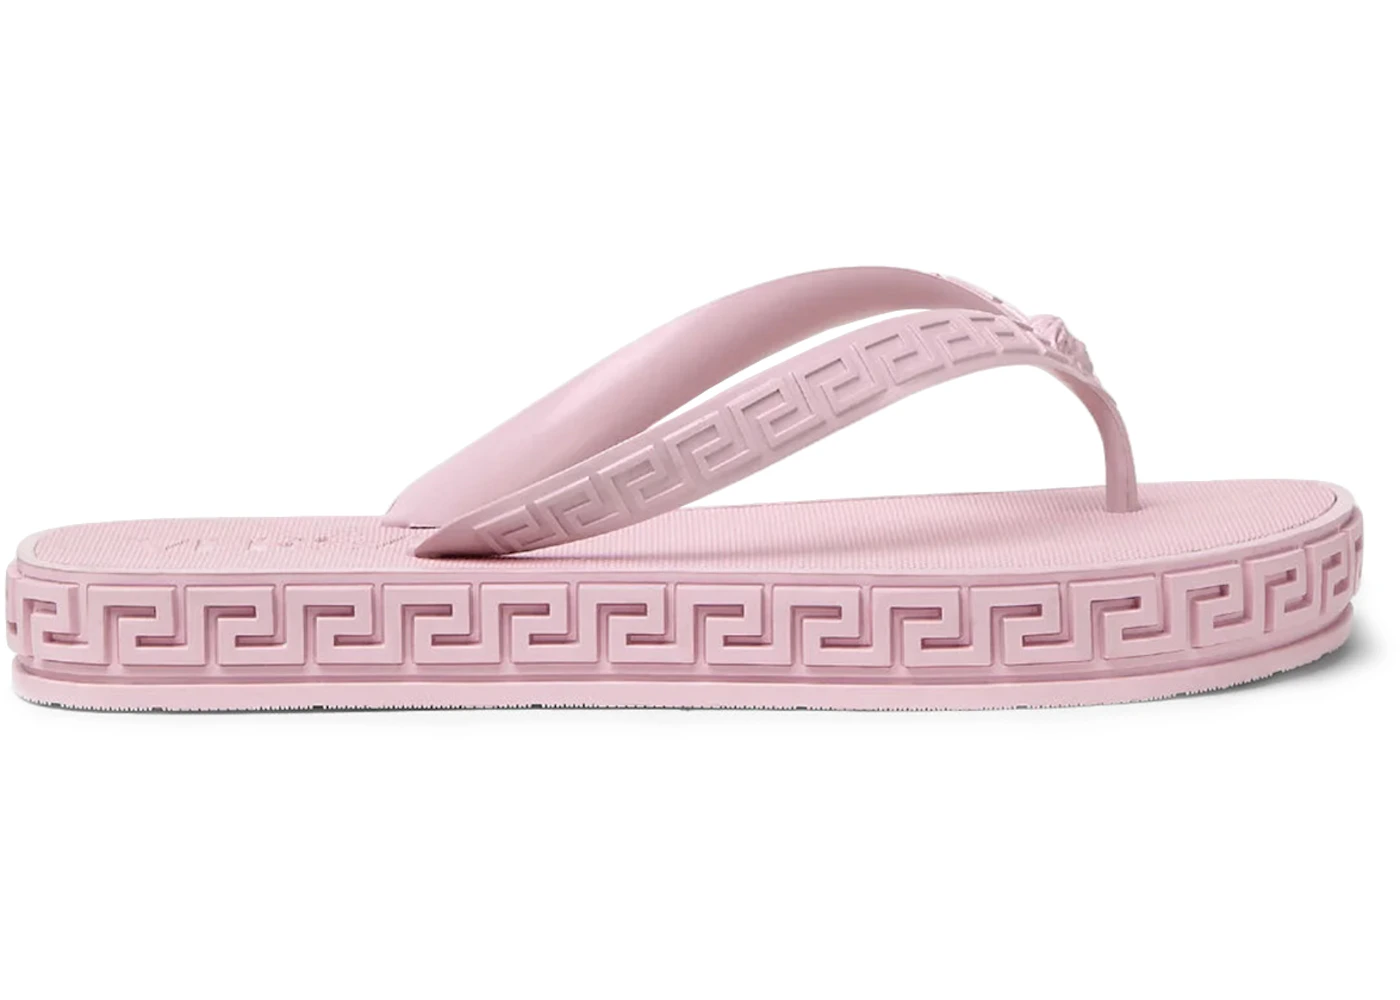 Versace Greca Flip Flops Light Pink (Women's) - 1003737